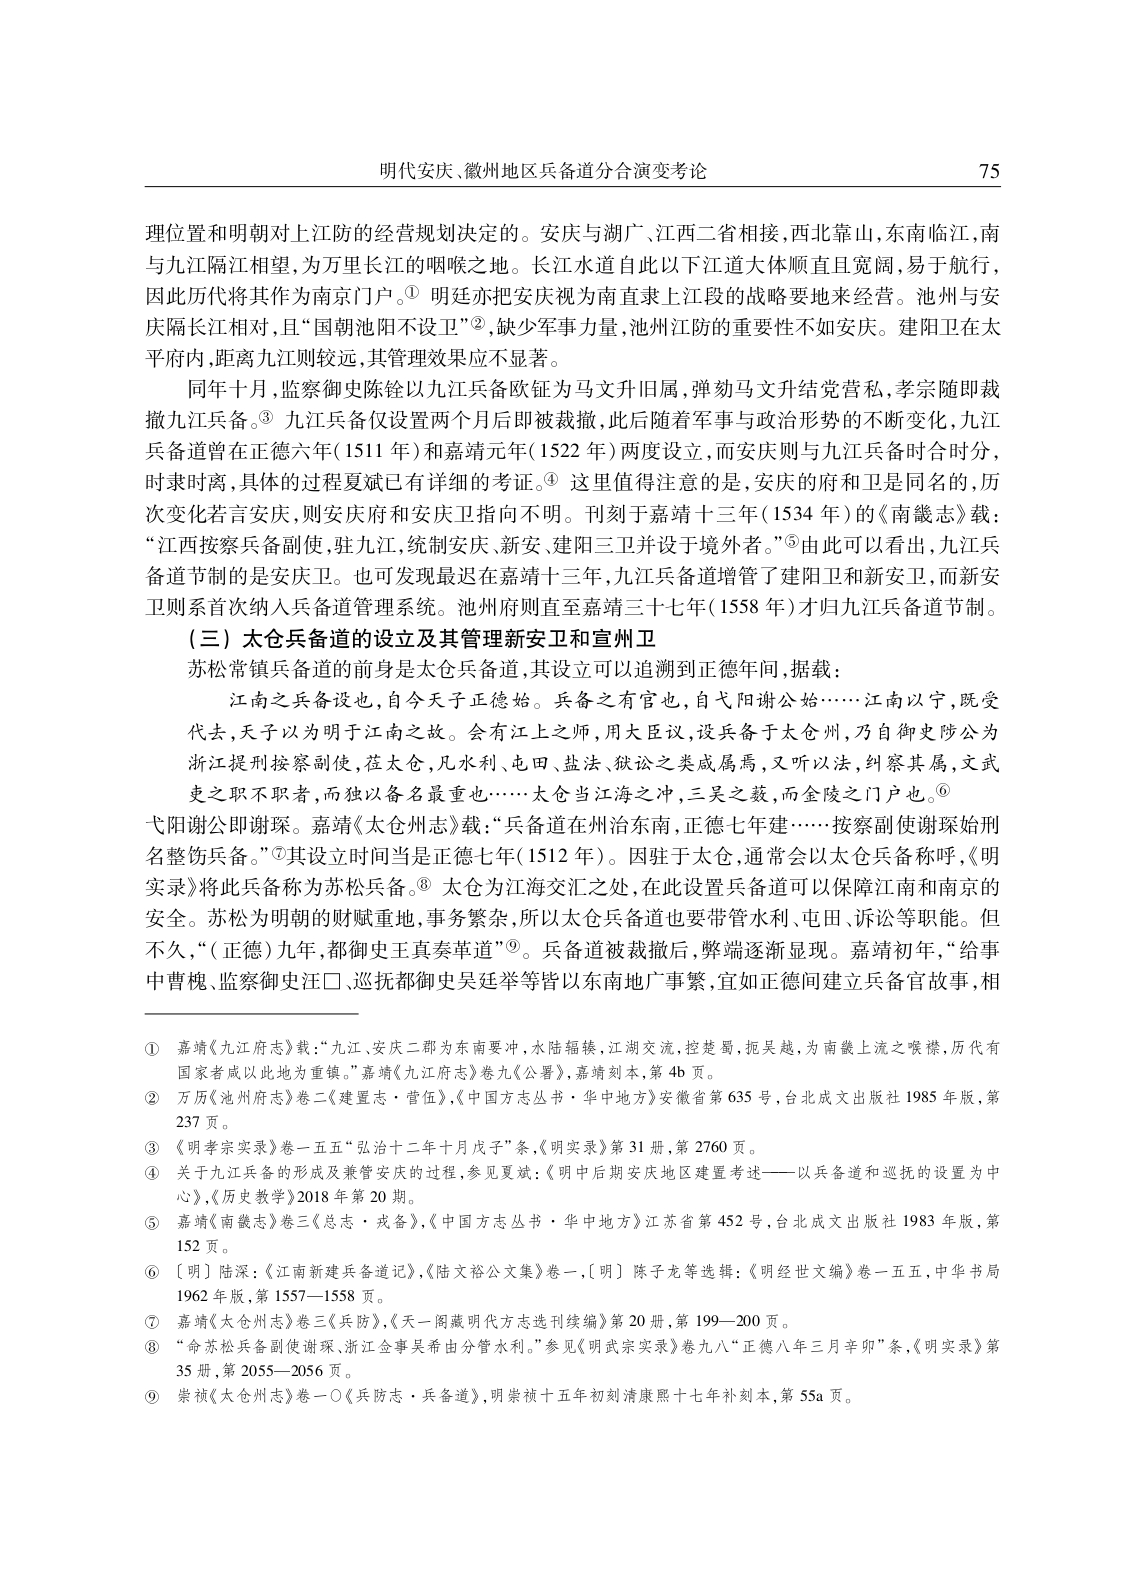 明代安庆、徽州地区兵备道分合演变考论_page-0004.jpg